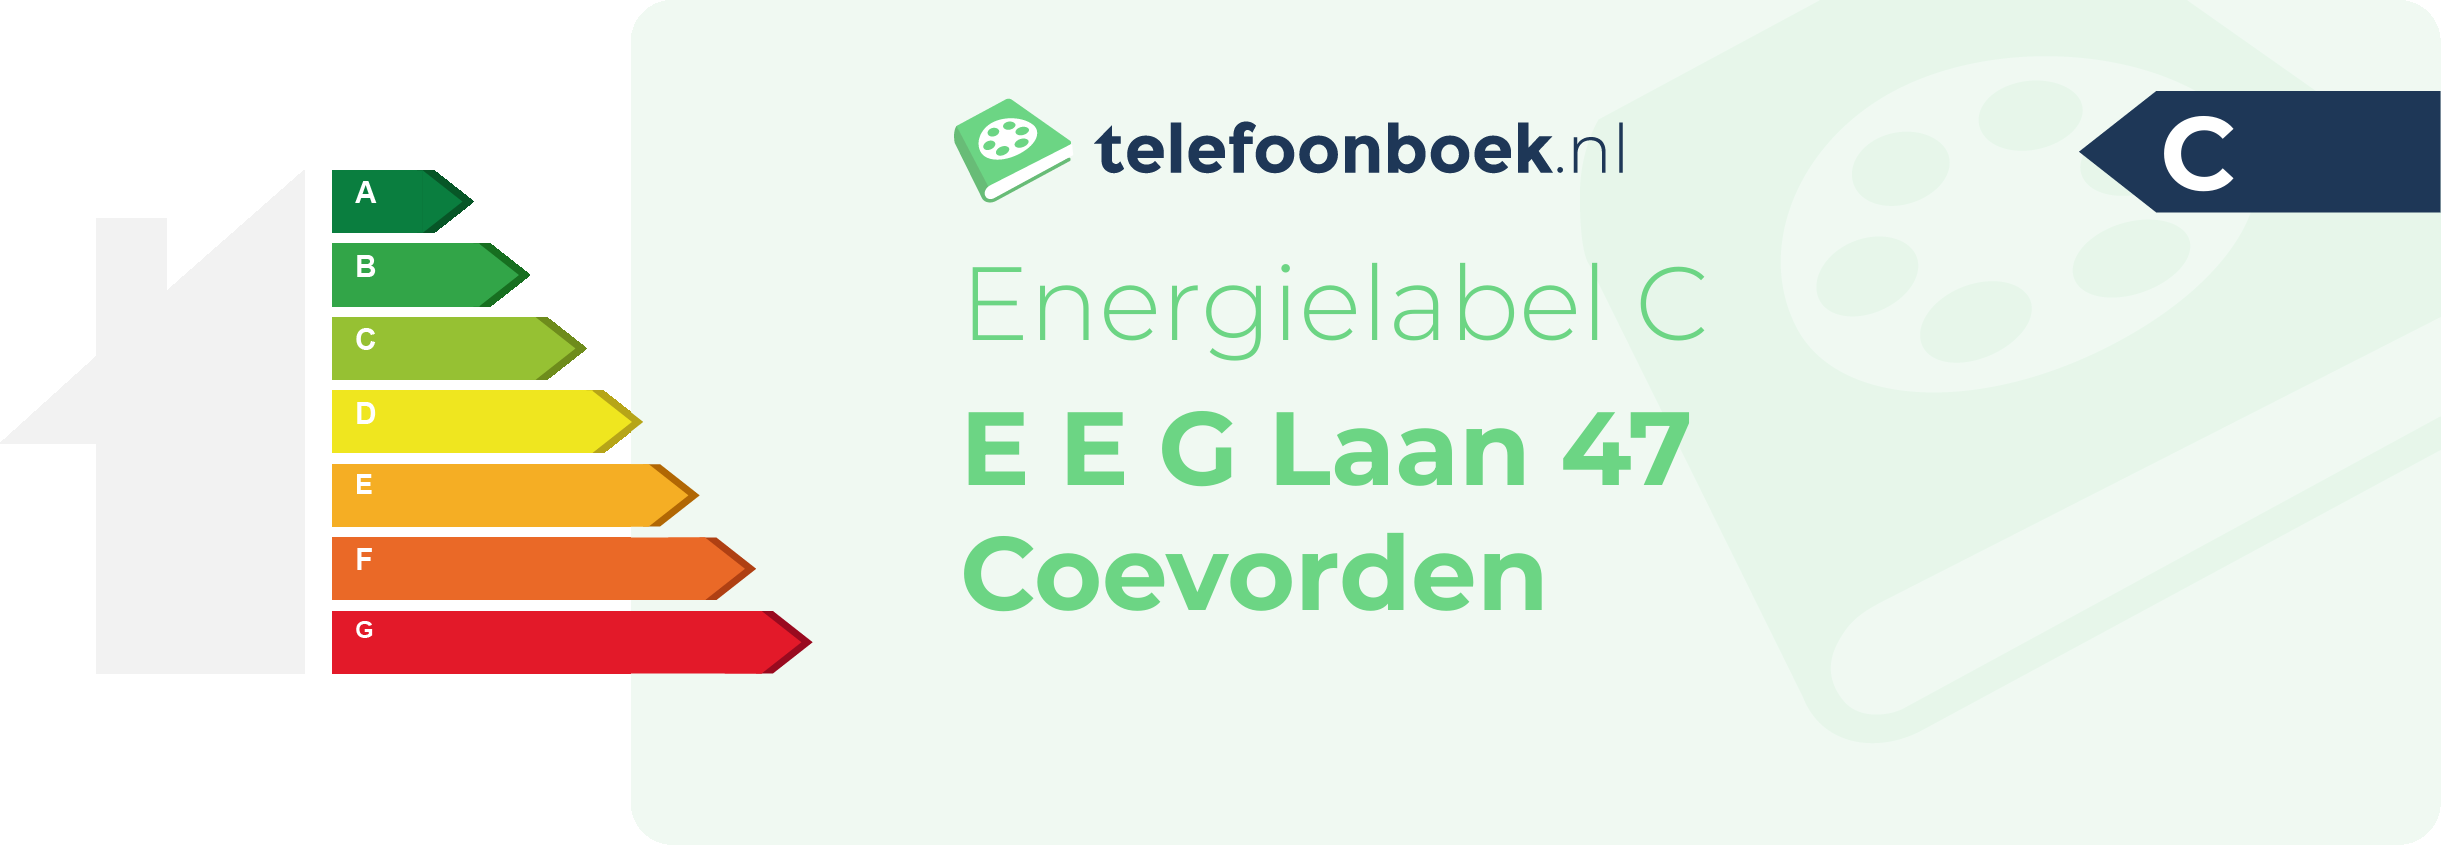 Energielabel E E G Laan 47 Coevorden